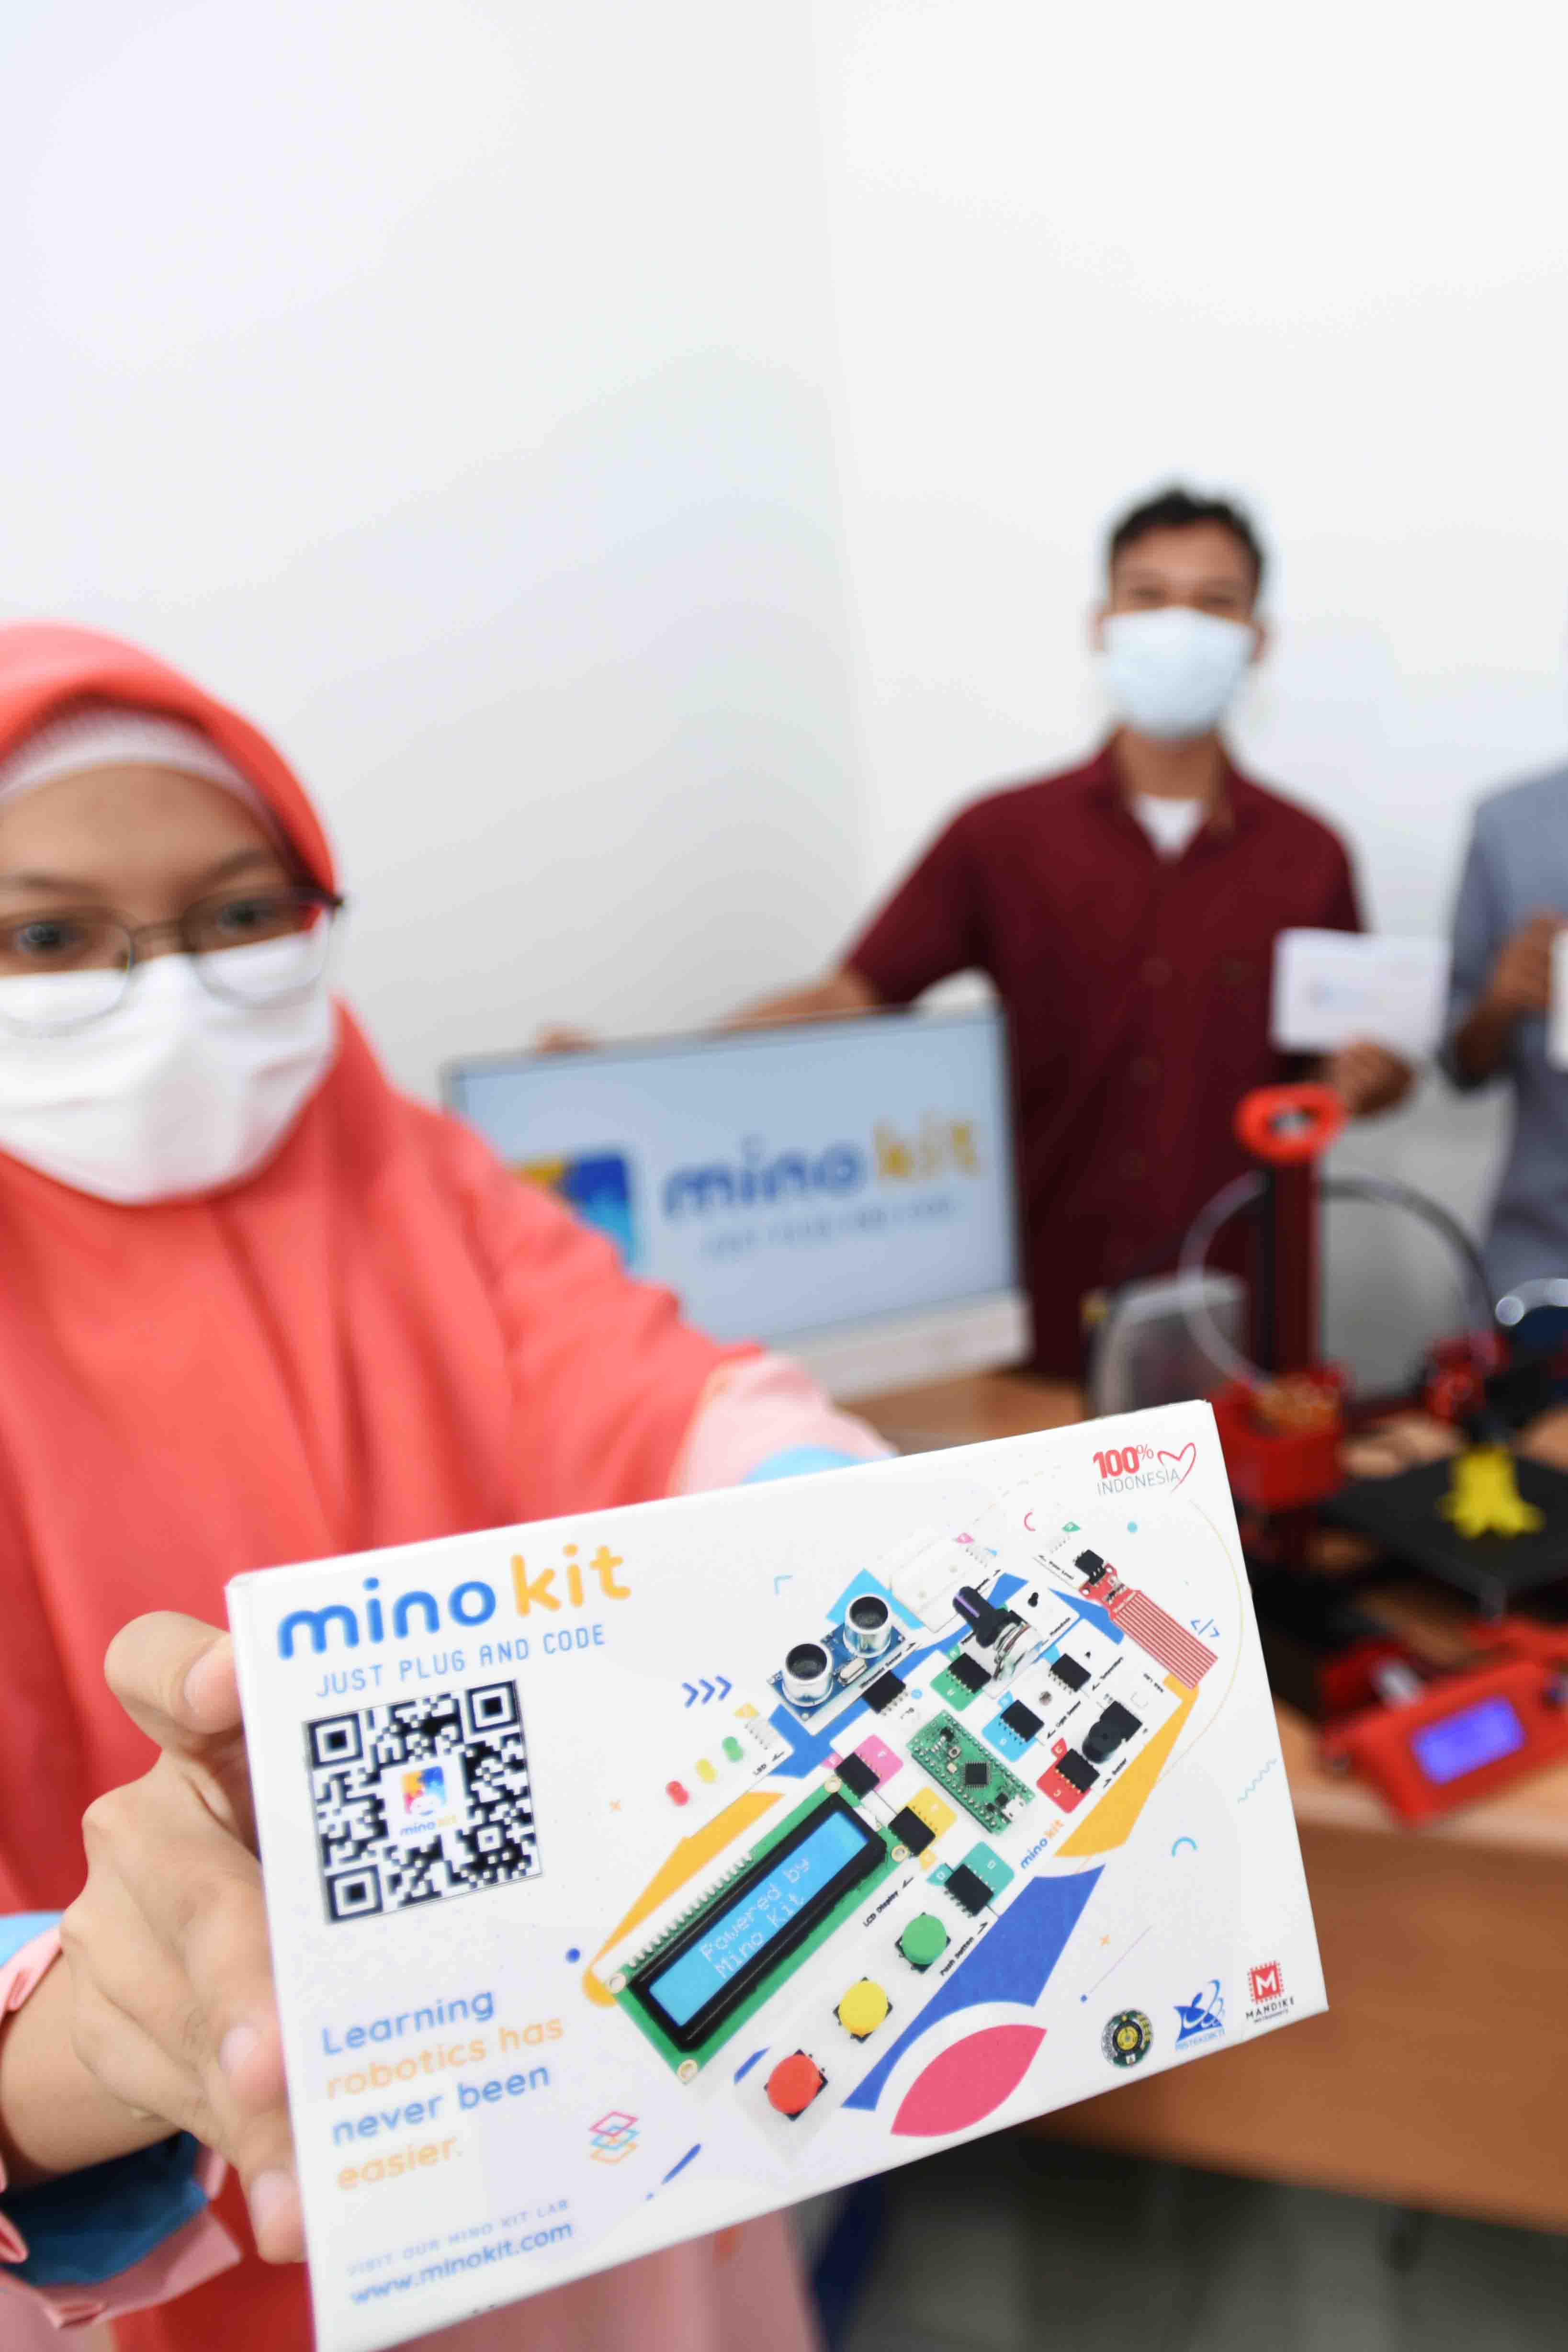 MINO KIT, Inovasi Robotik Semudah “Plug and Play”